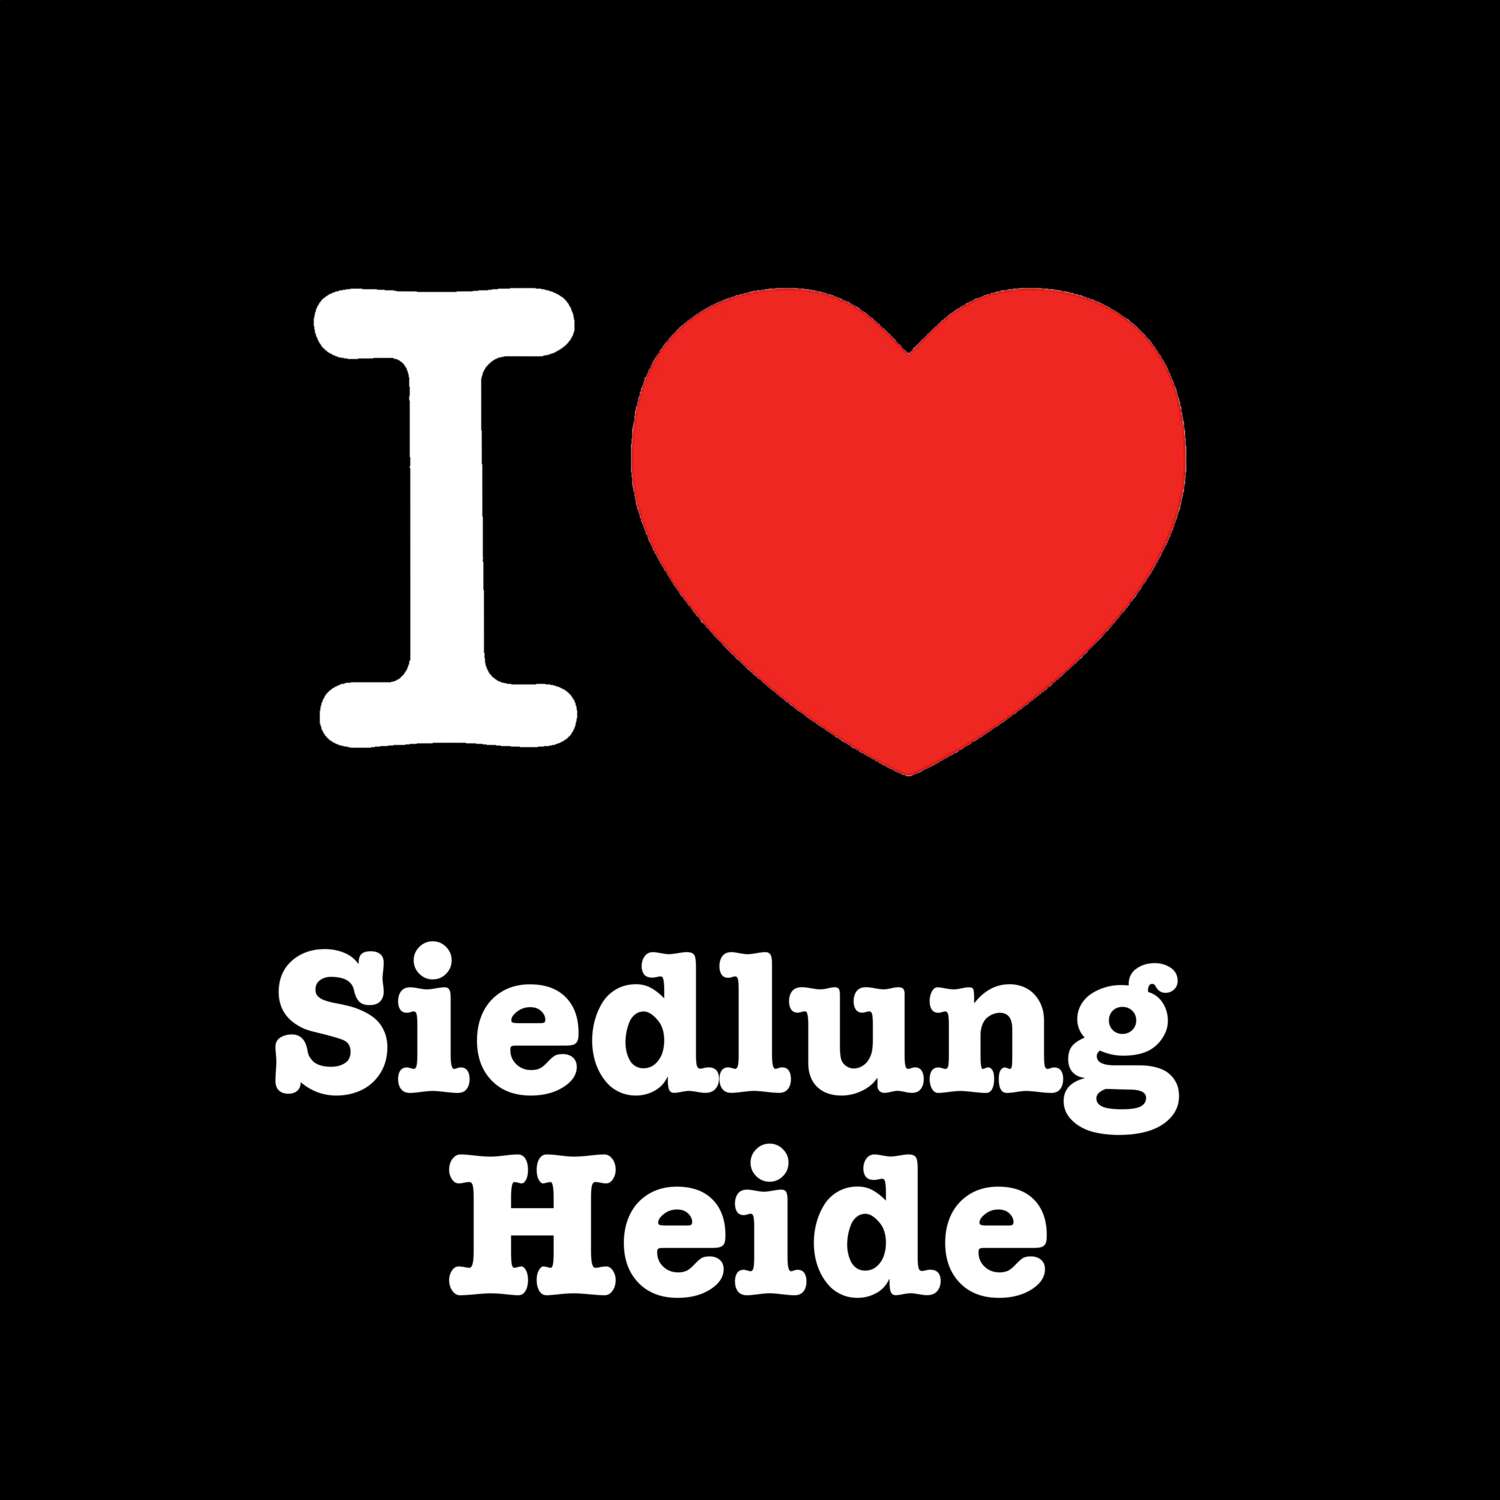 Siedlung Heide T-Shirt »I love«